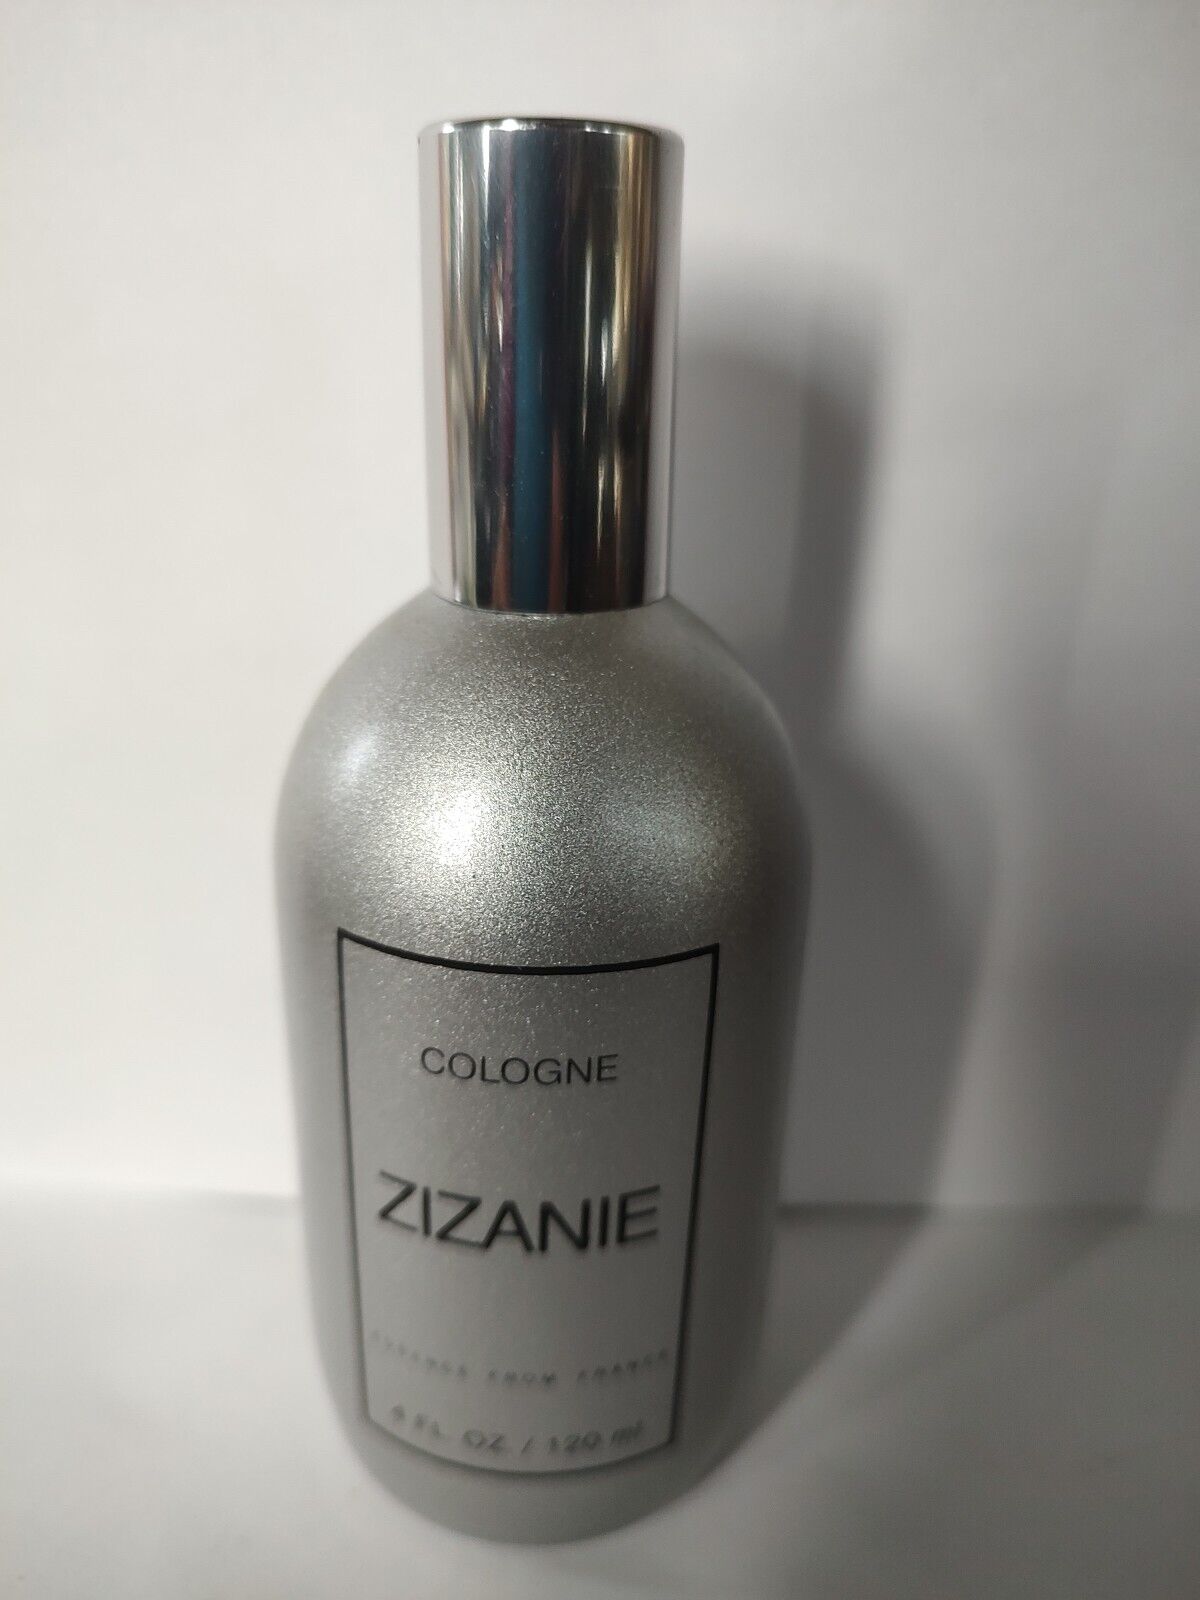 VTG ZIZANIE Essence Cologne by Fragonard 4 oz / 118.3ml Spray For Men \'90\'s